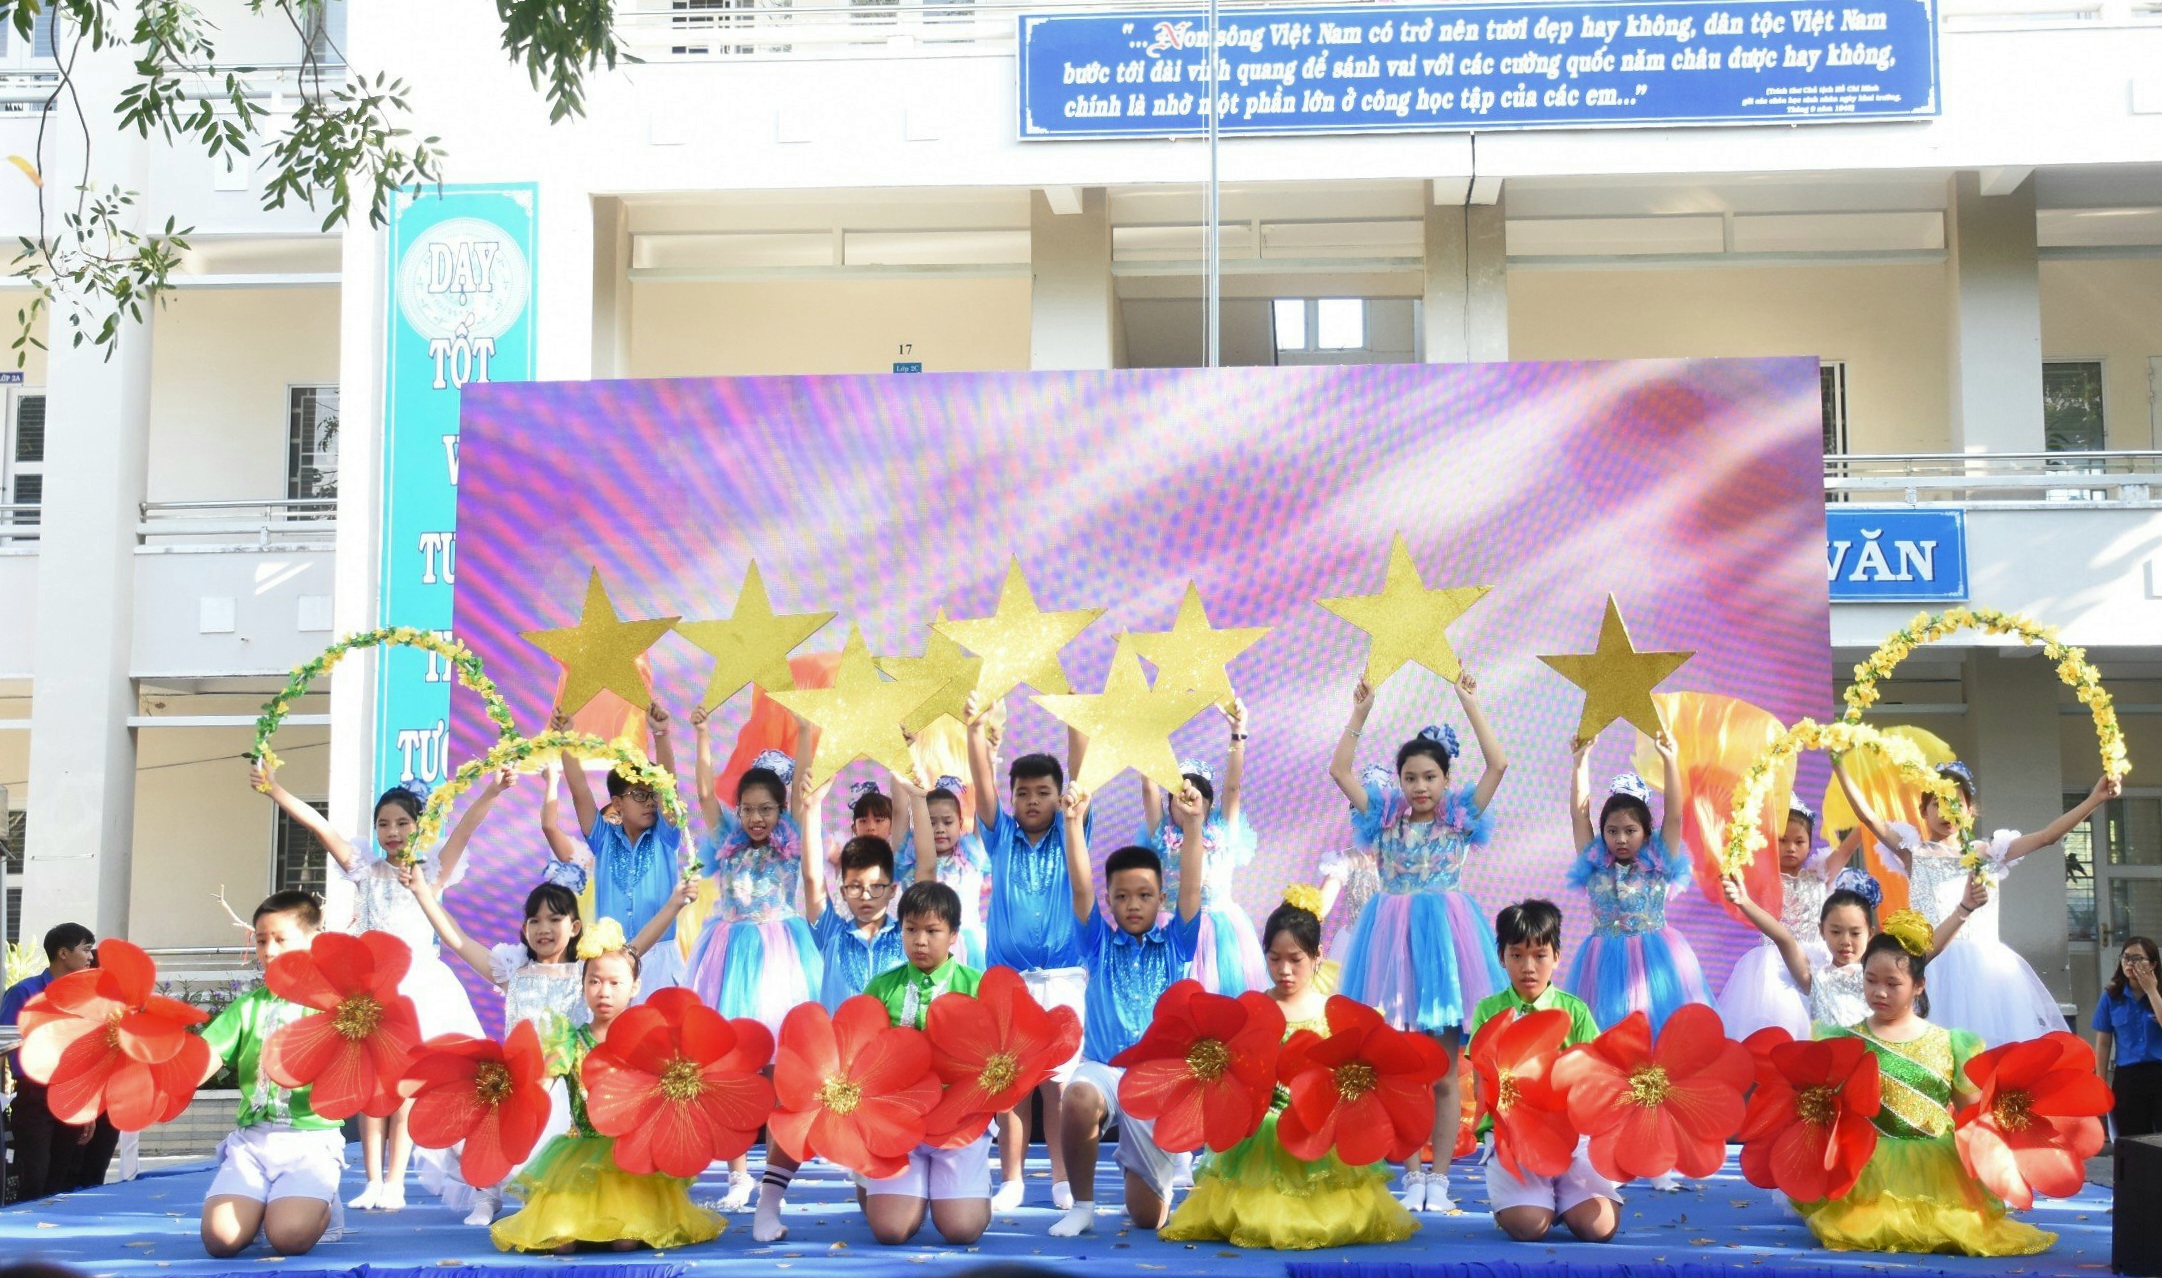 Một tiết mục văn nghệ về Đội TNTP Hồ Chí Minh được thiếu nhi trình diễn tại ngày hội.